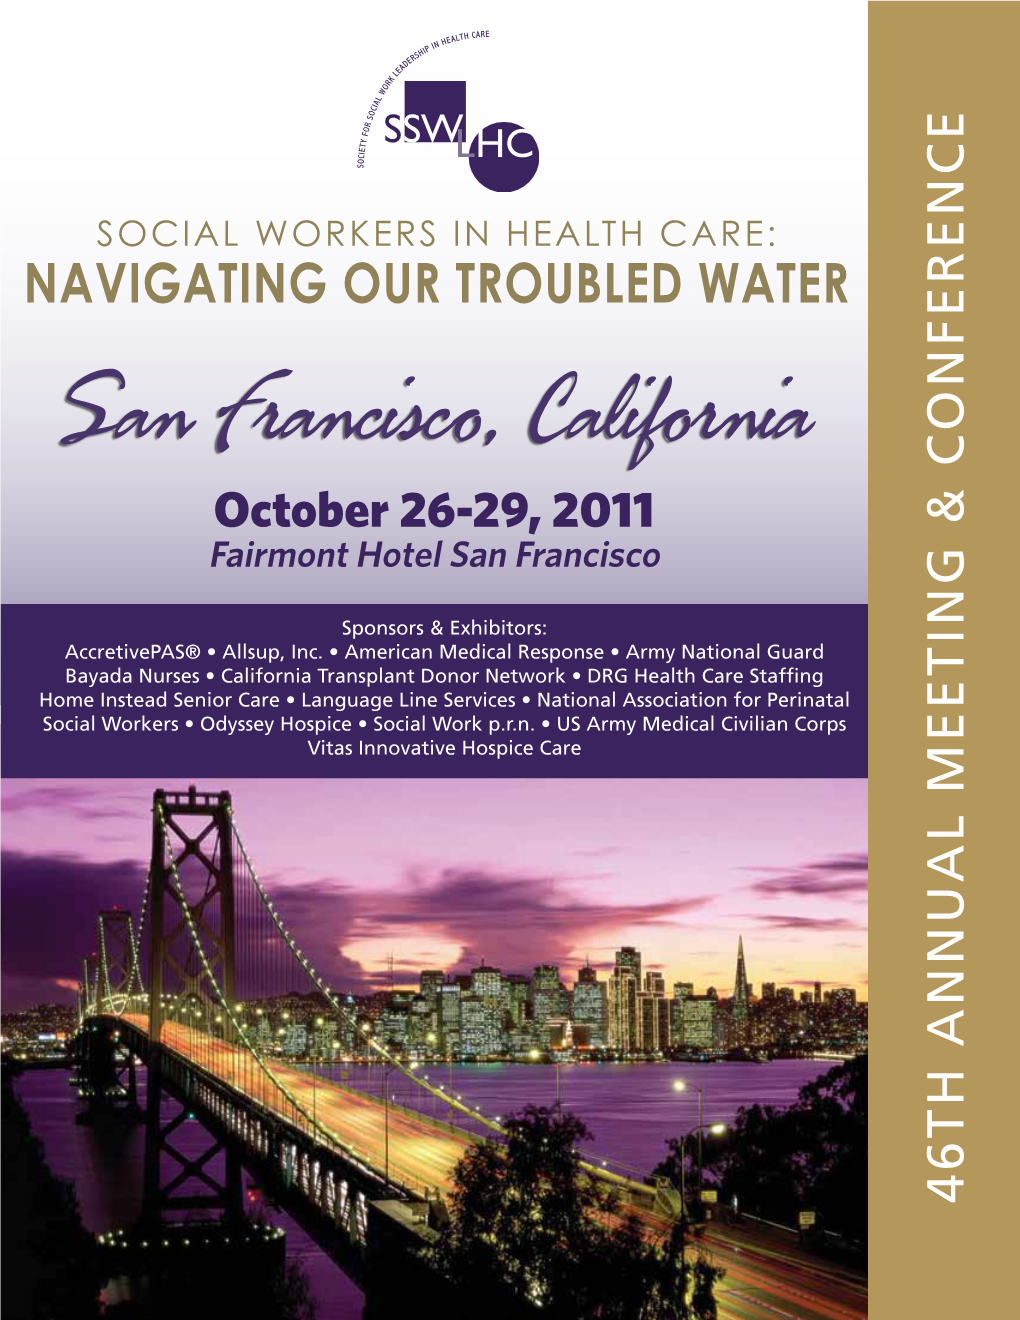 San Francisco, California October 26-29, 2011 Fairmont Hotel San Francisco